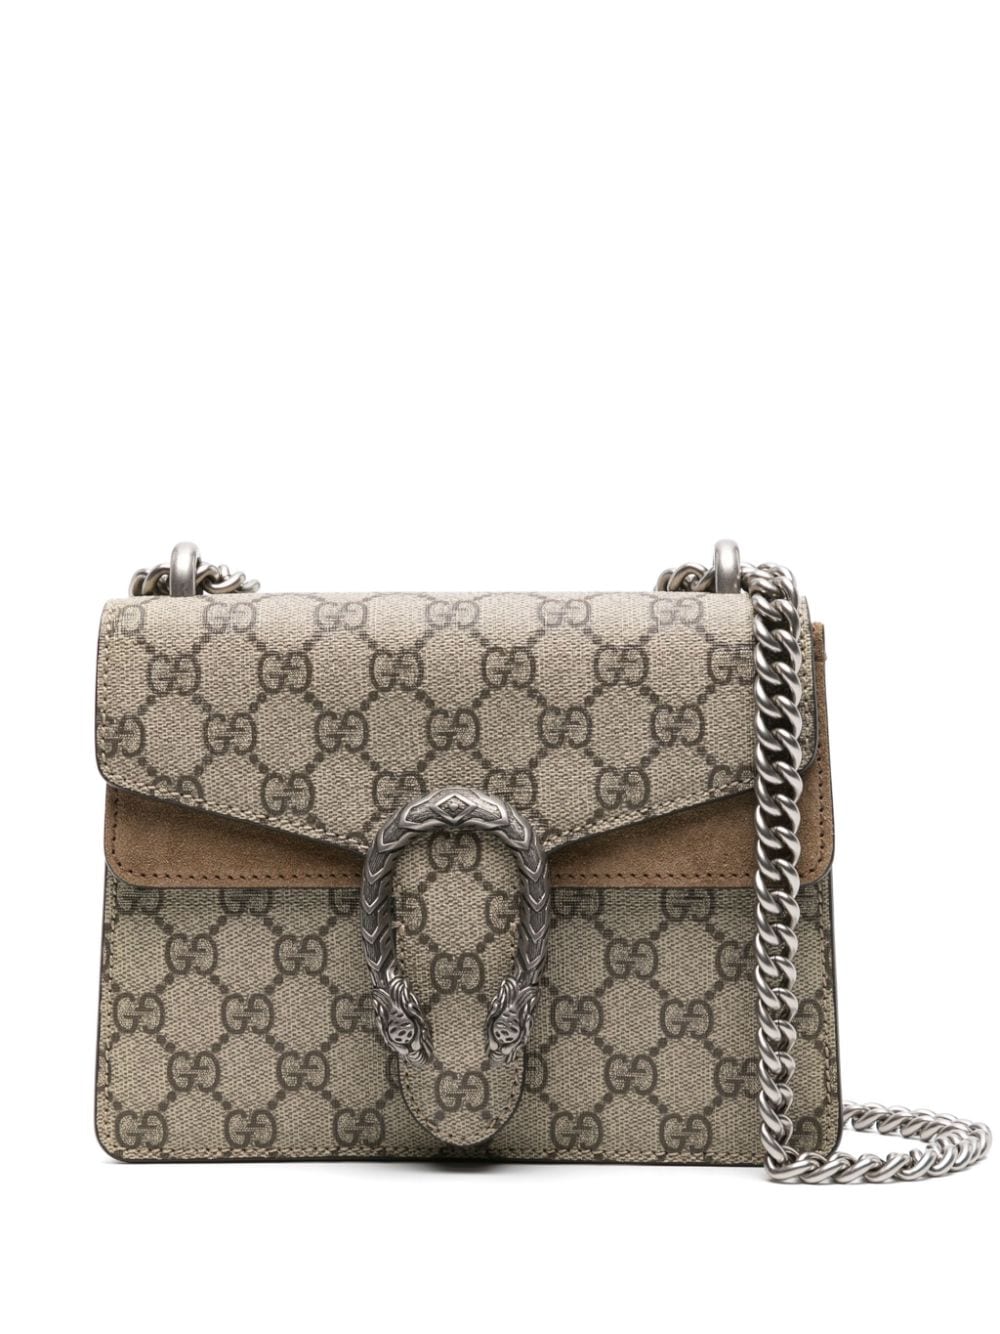 Image 1 of Gucci mini Dionysus shoulder bag